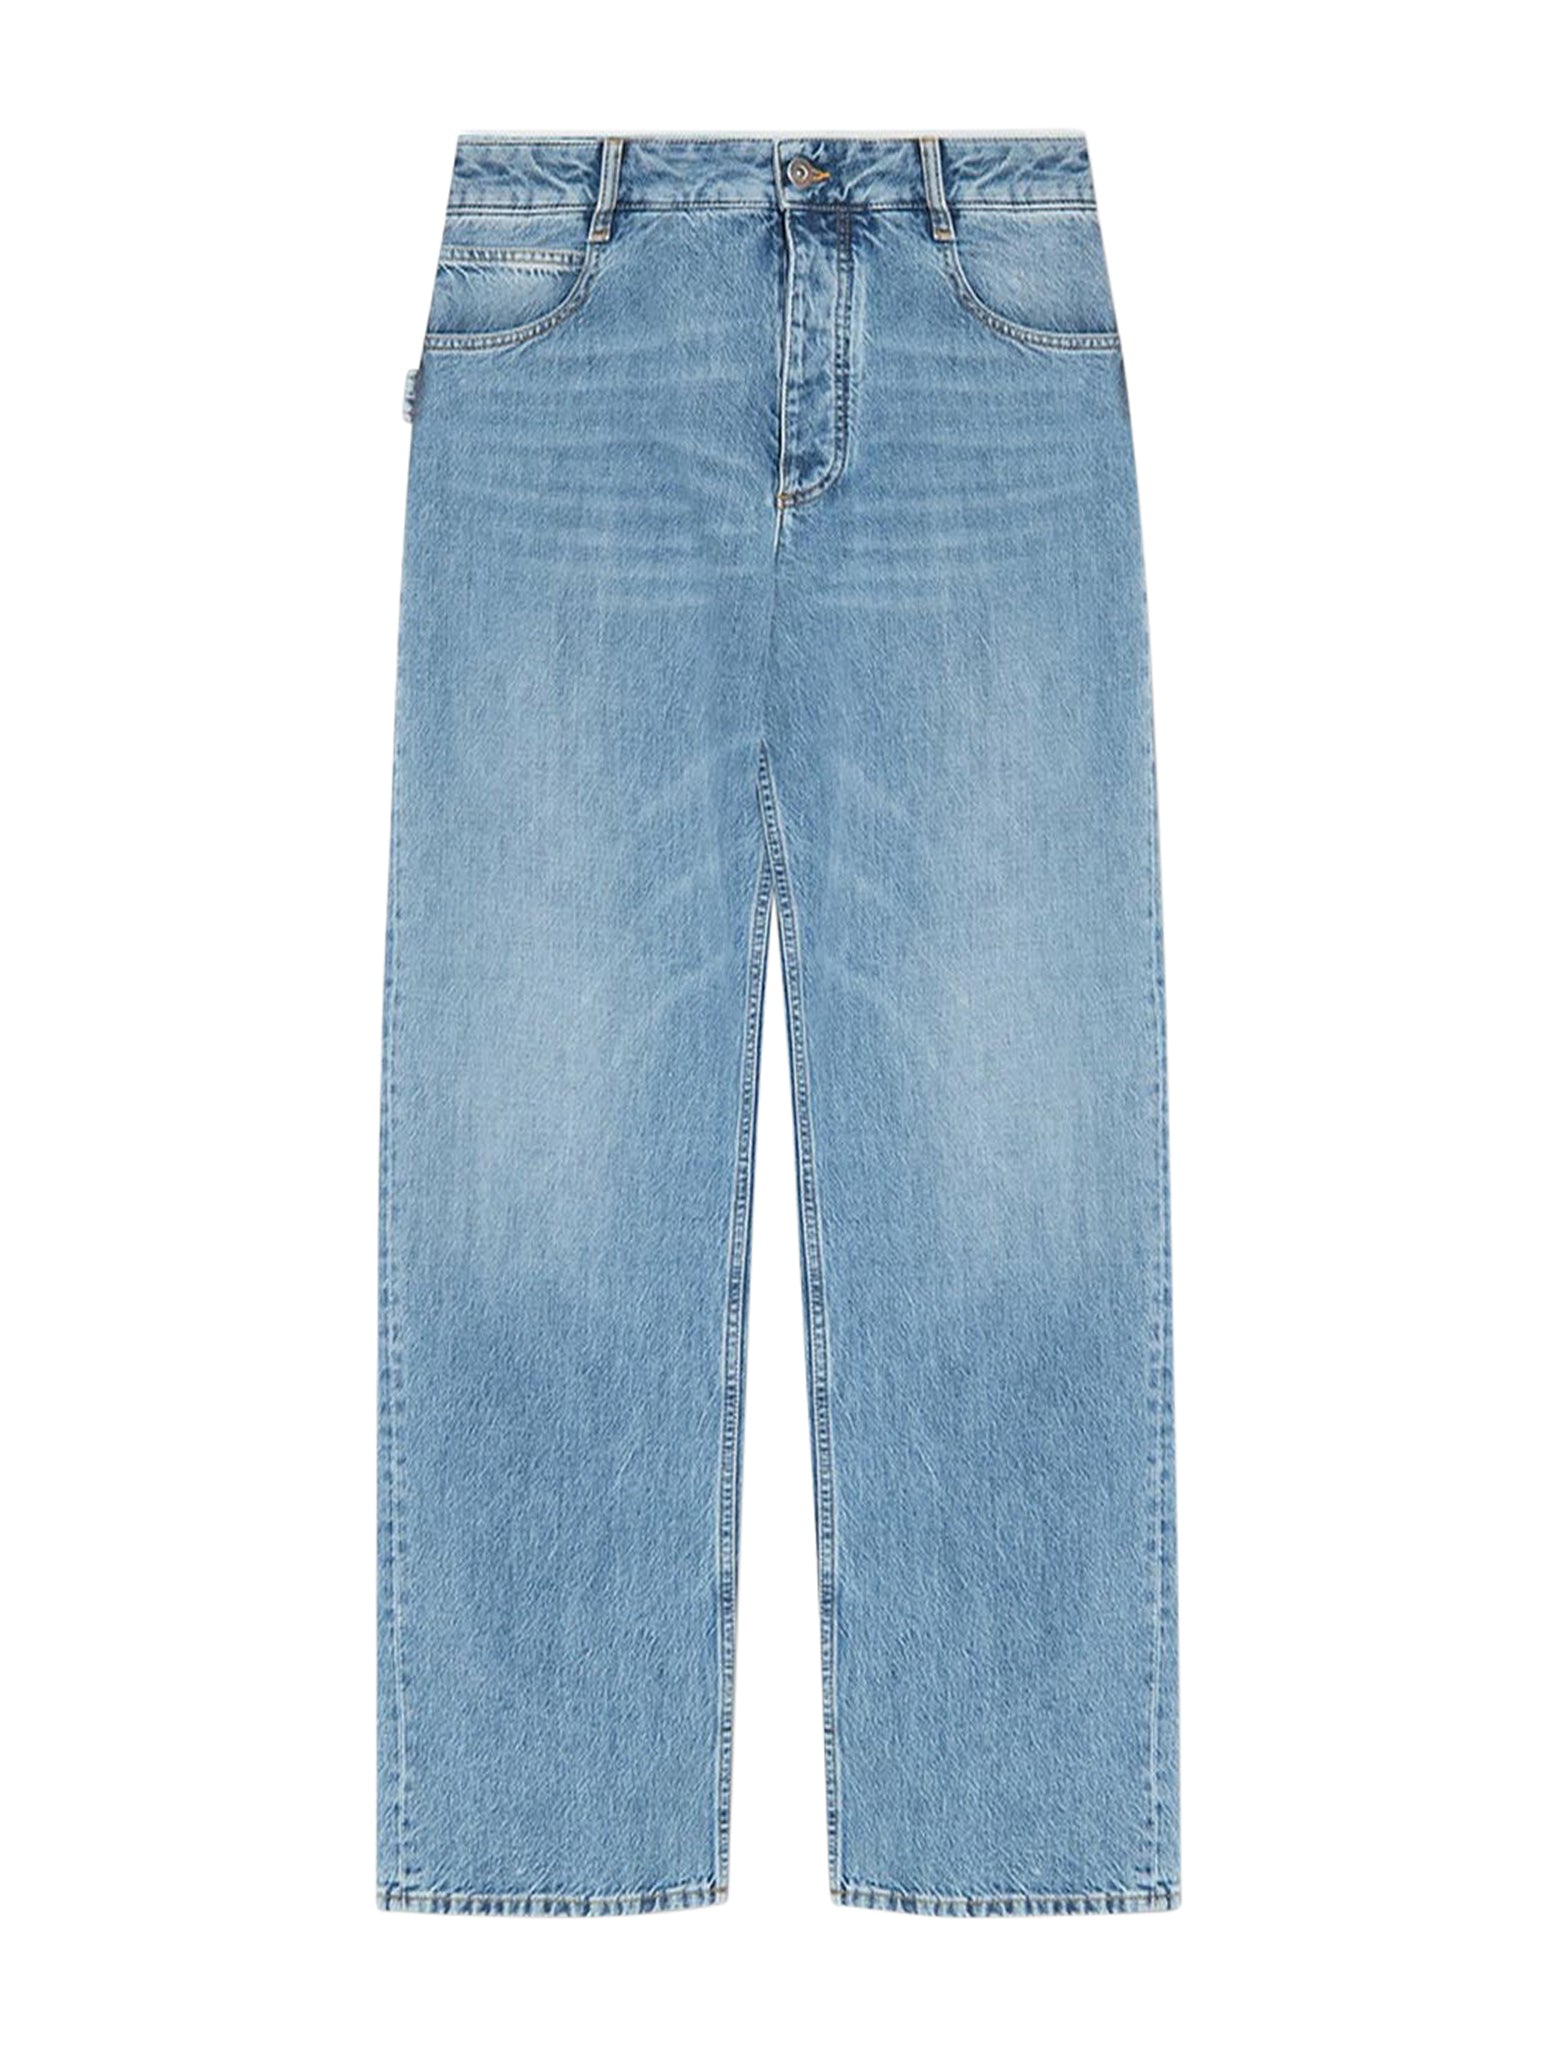 Bottega veneta women`s blue denim jeans